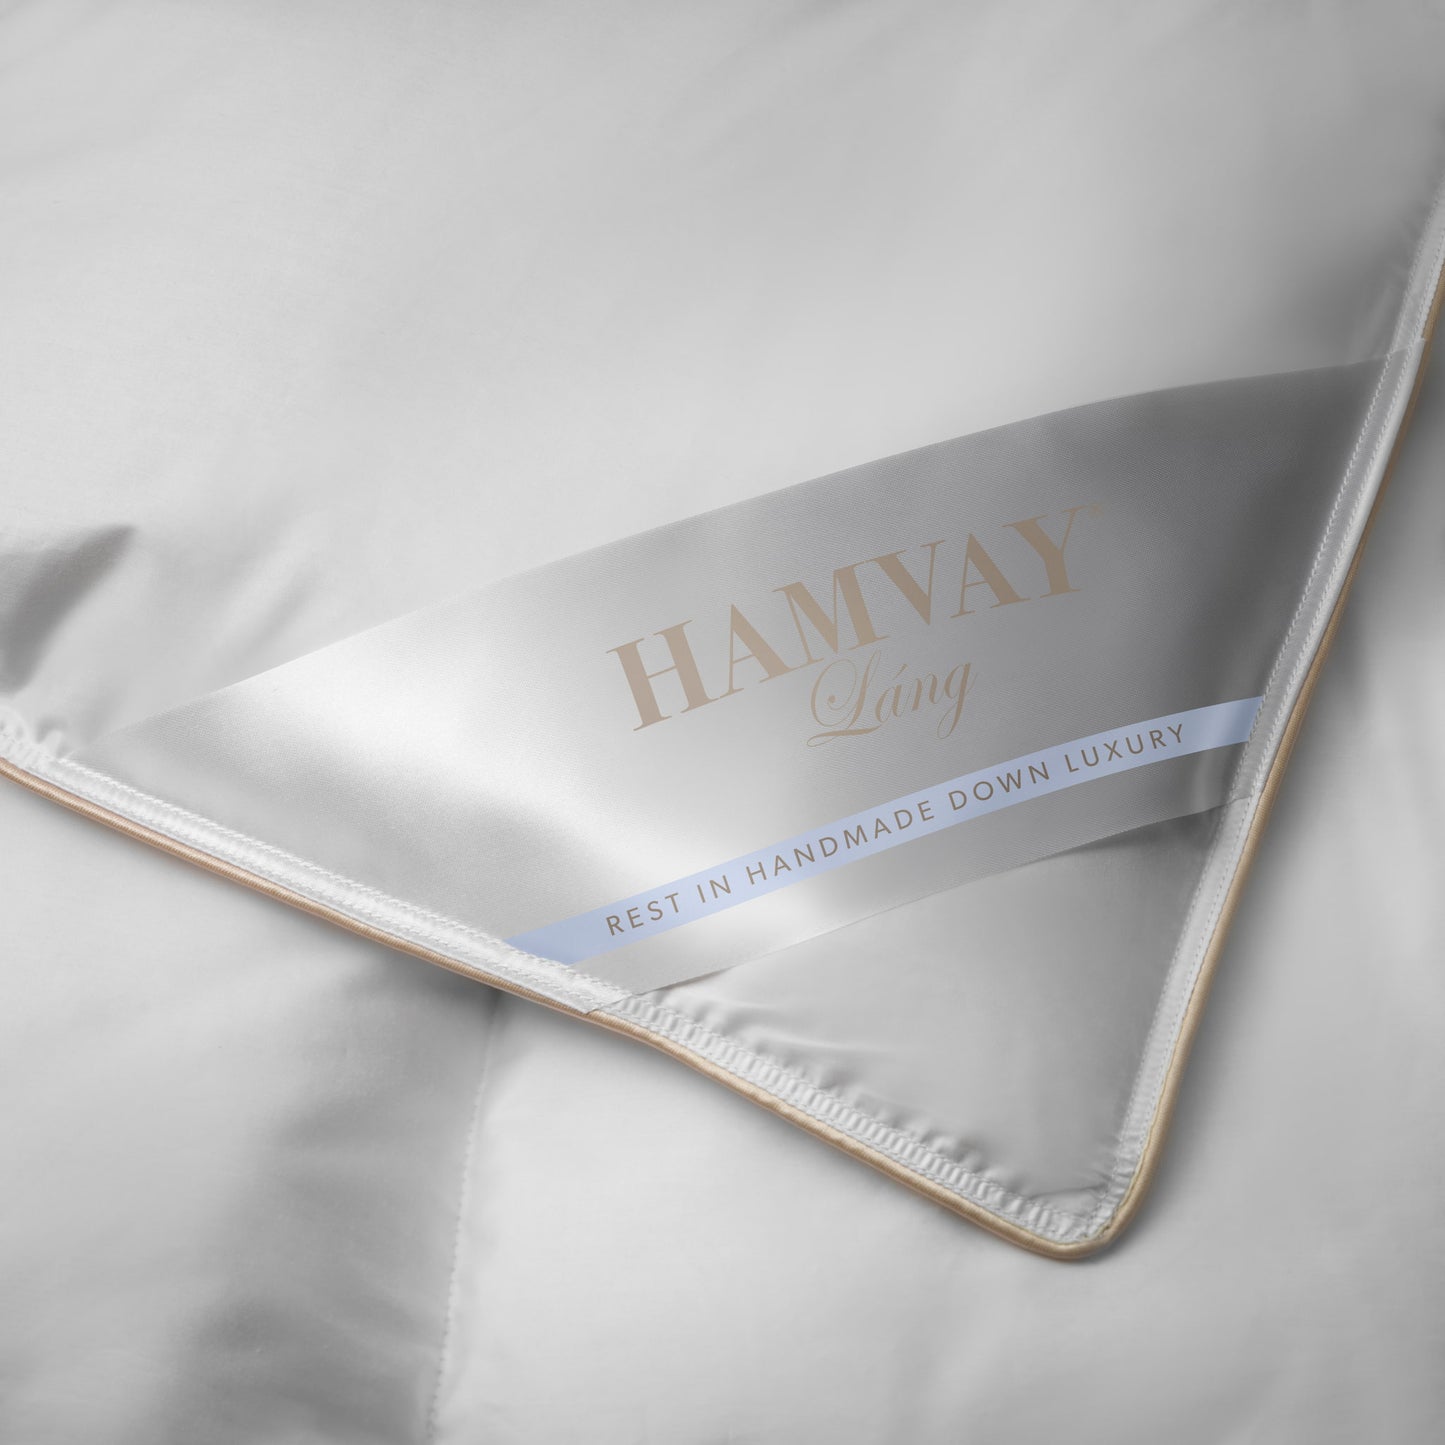 Hamvay-Láng goose down comforter corner label captured closely